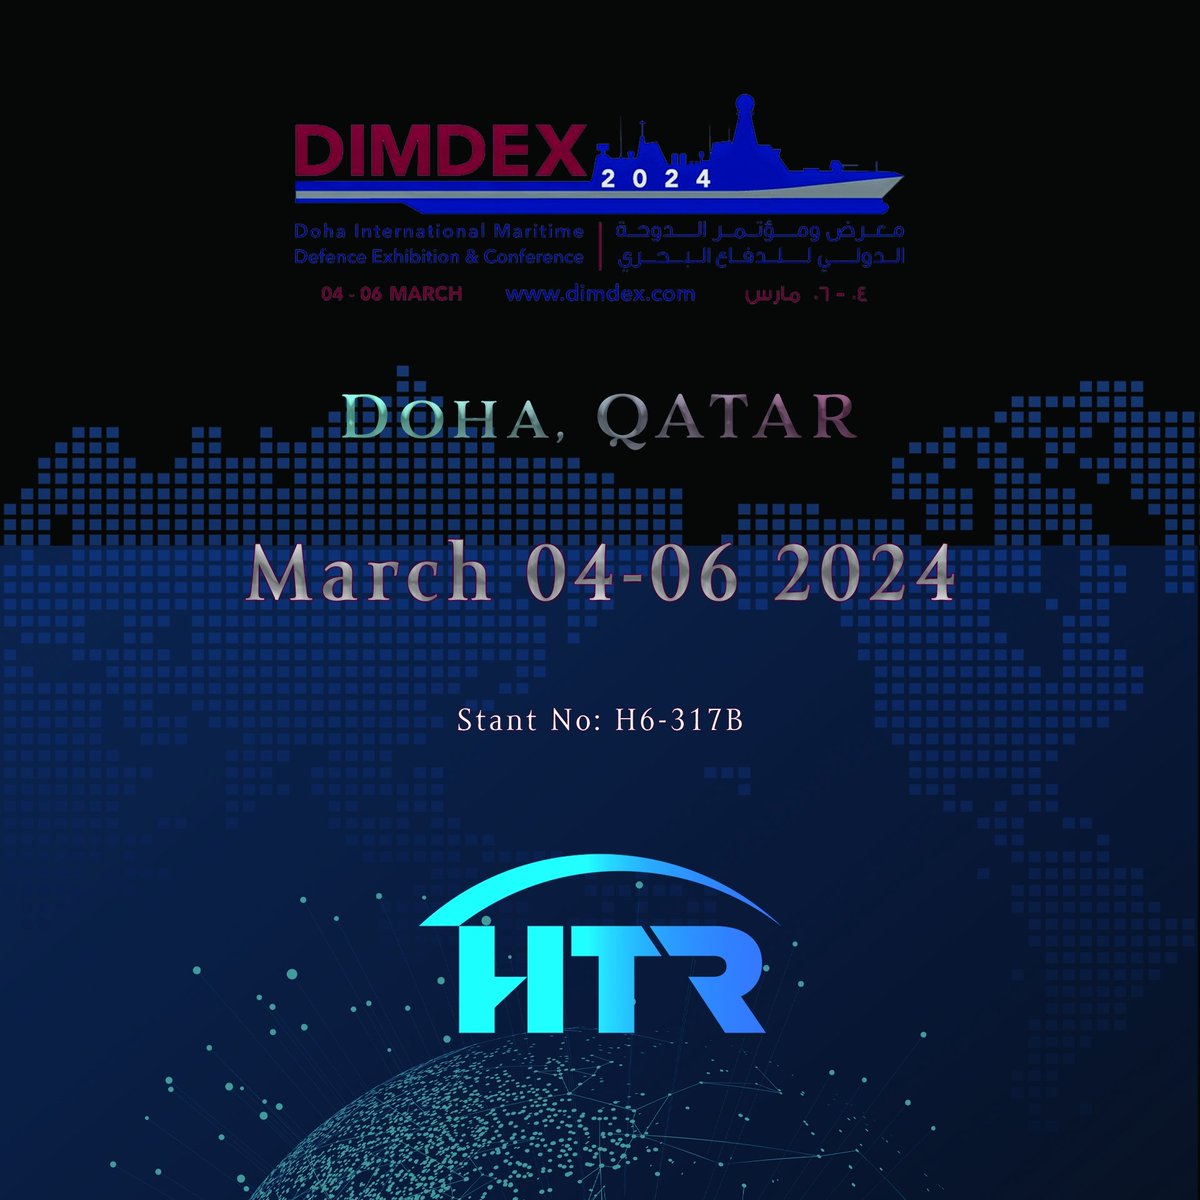 Katar, Doha'da düzenlenecek #dimdex2024 Fuar'ındayız.
Sizleri de standımıza bekliyoruz.

HTR have taken place at #dimdex2024 in Qatar,Doha.

We are looking forward to meeting our visitors.